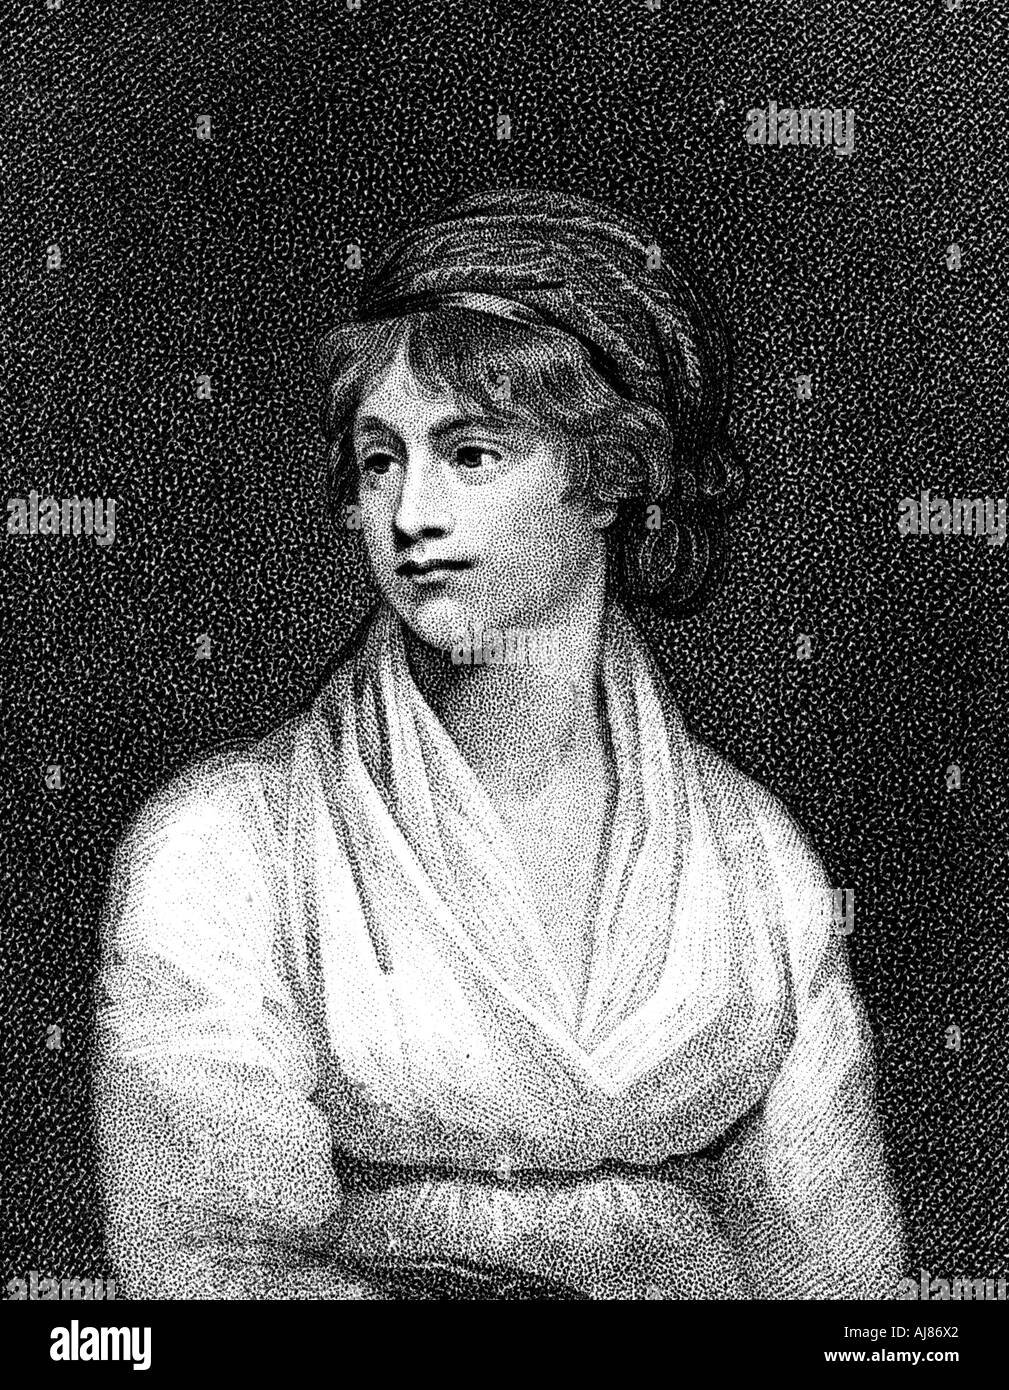 Mary Wollstonecraft, 18e siècle, professeur de français, écrivain et féministe. Artiste : Inconnu Banque D'Images